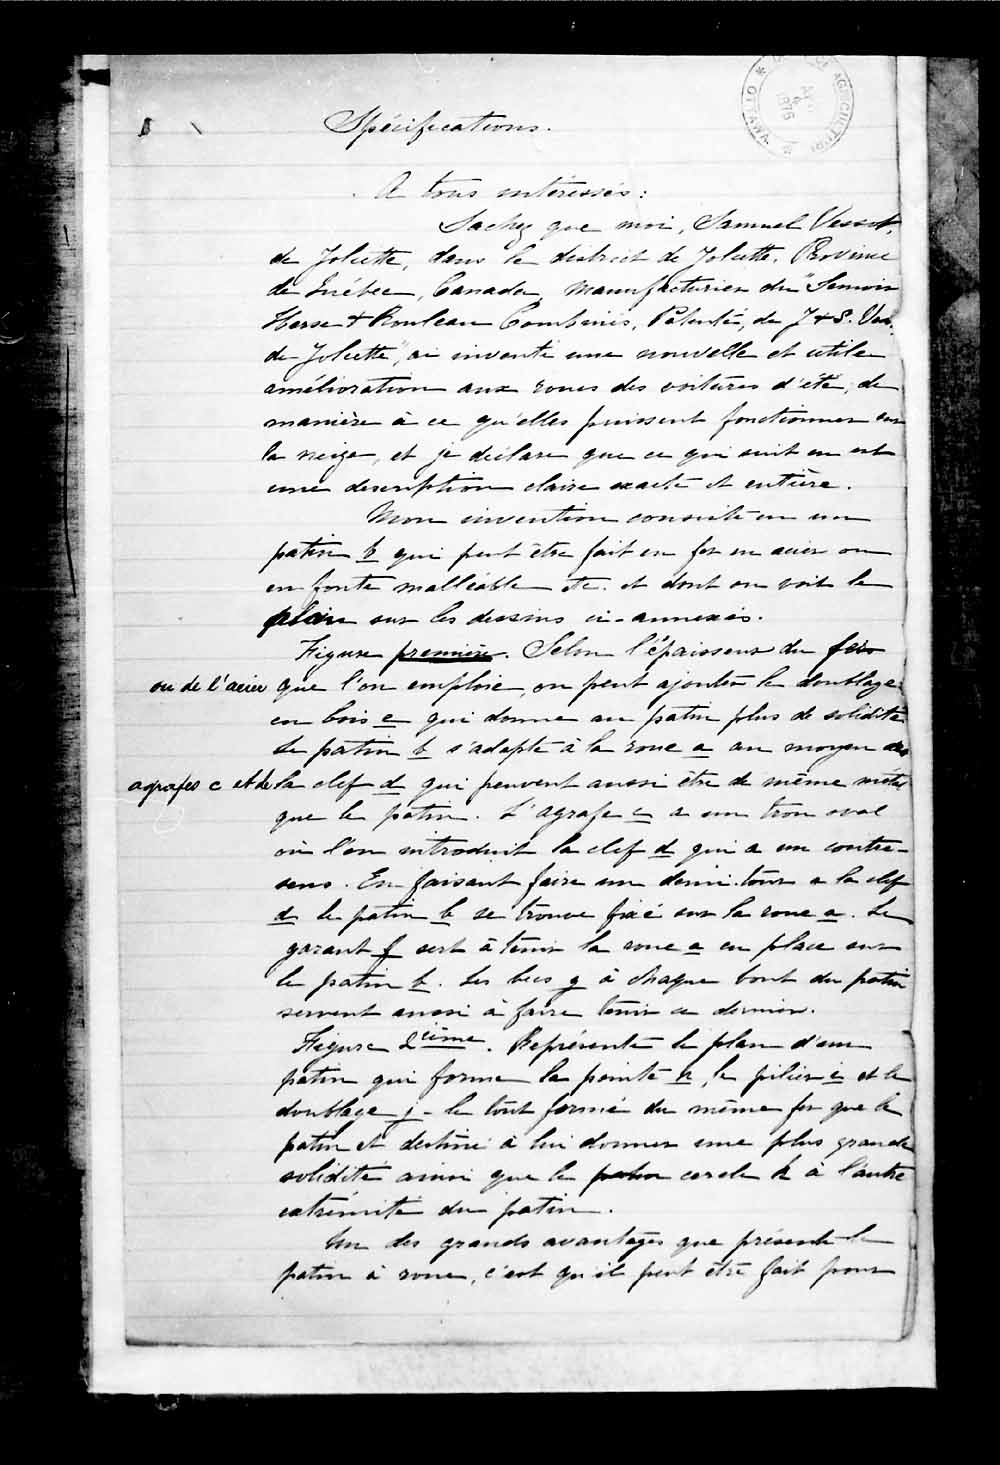 Page numérisé de Brevets canadiens, 1869-1919 pour l'image numéro: e003273342